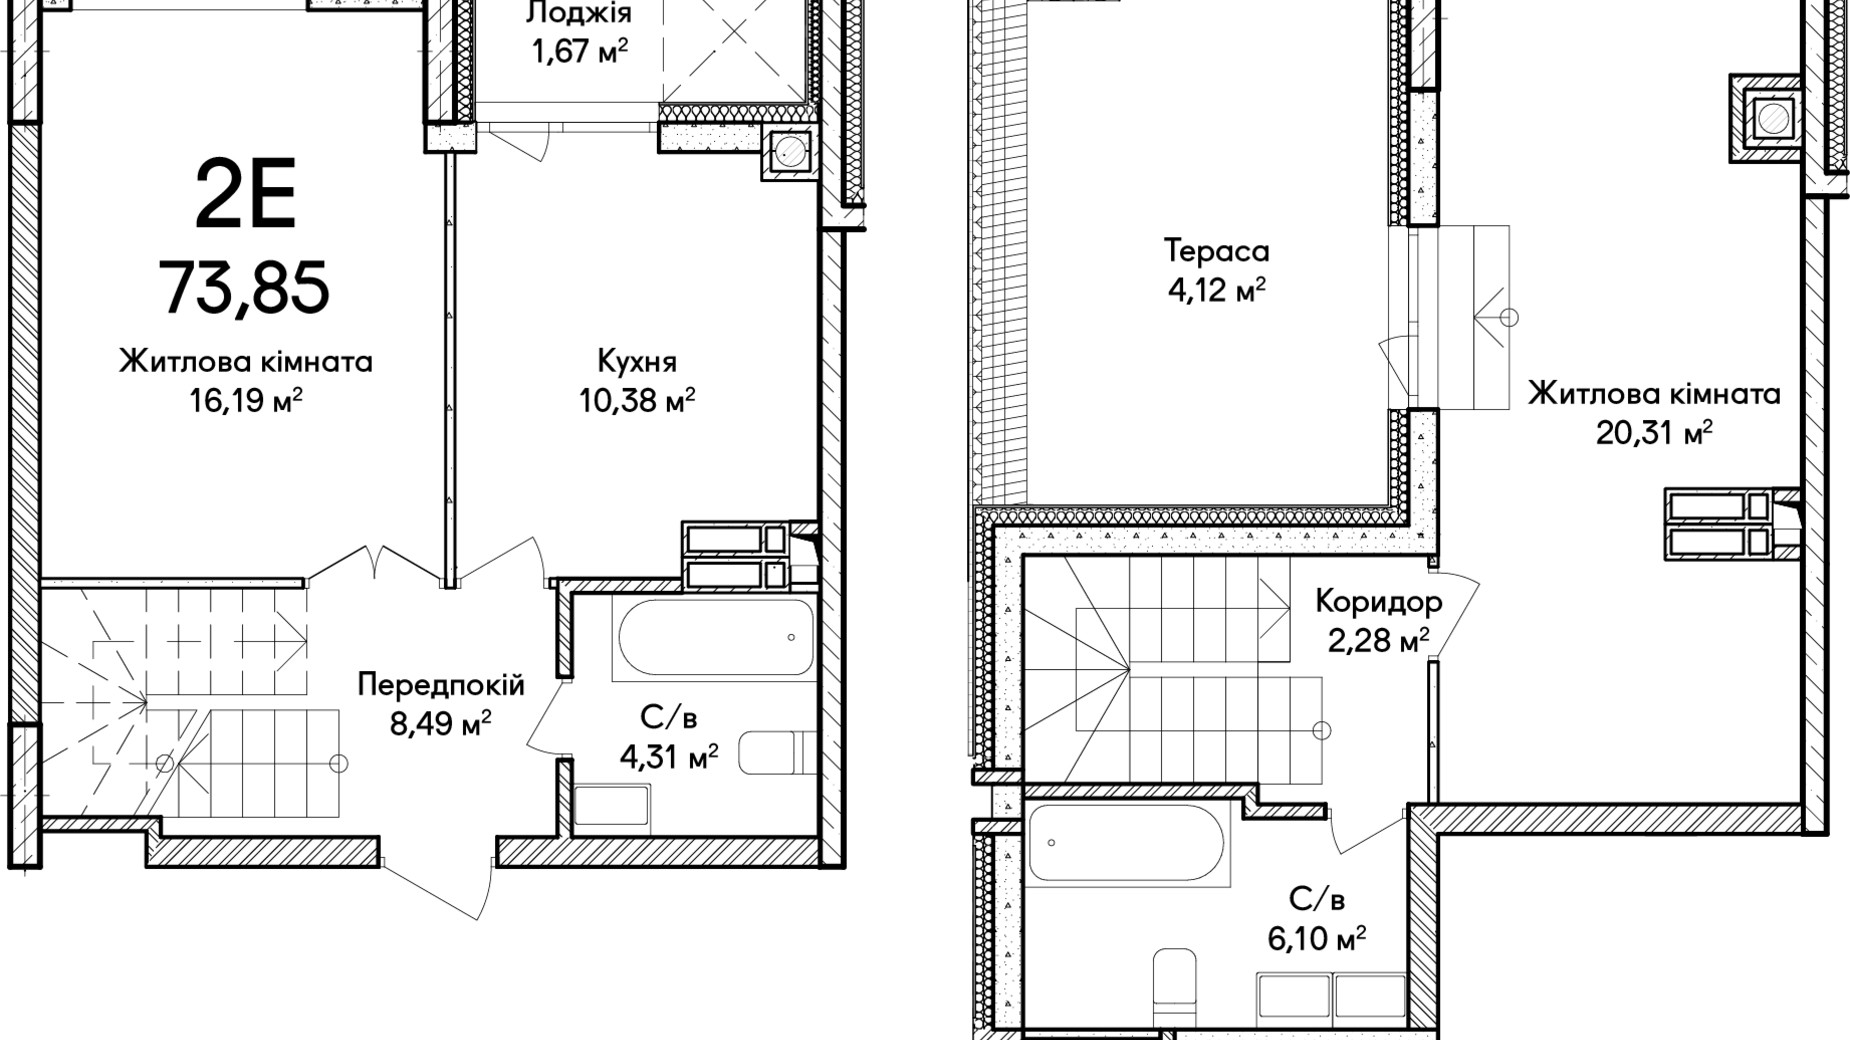 Планировка много­уровневой квартиры в ЖК Синергия Сити 40 м², фото 634259